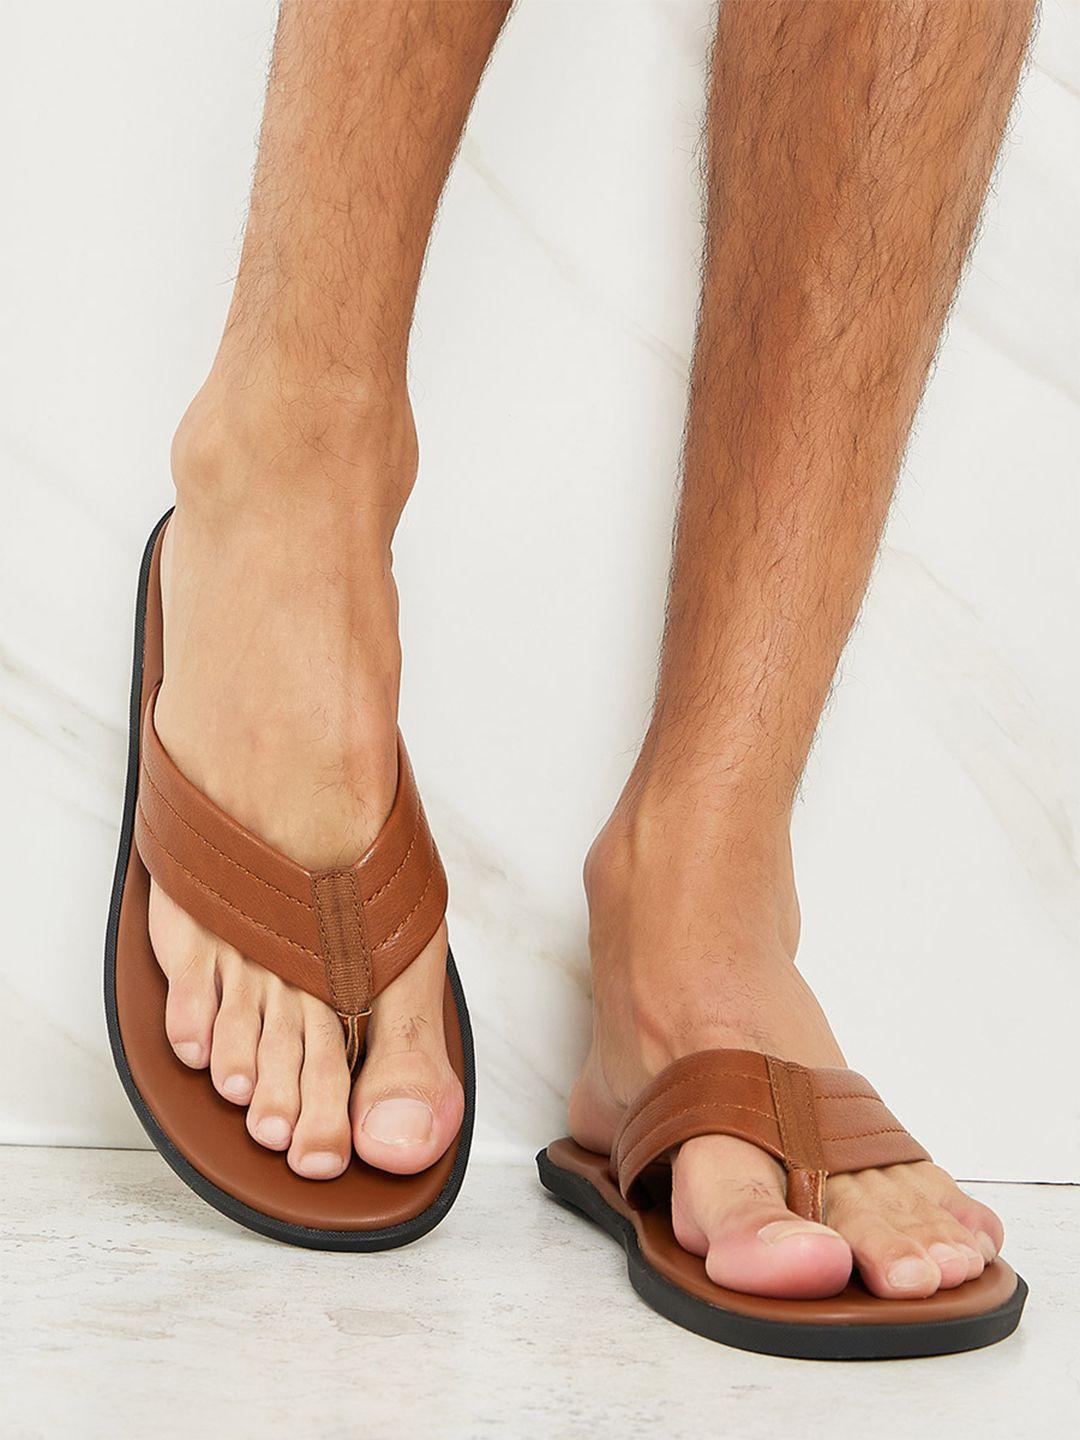 styli-men-tan-open-toe-thong-flip-flops